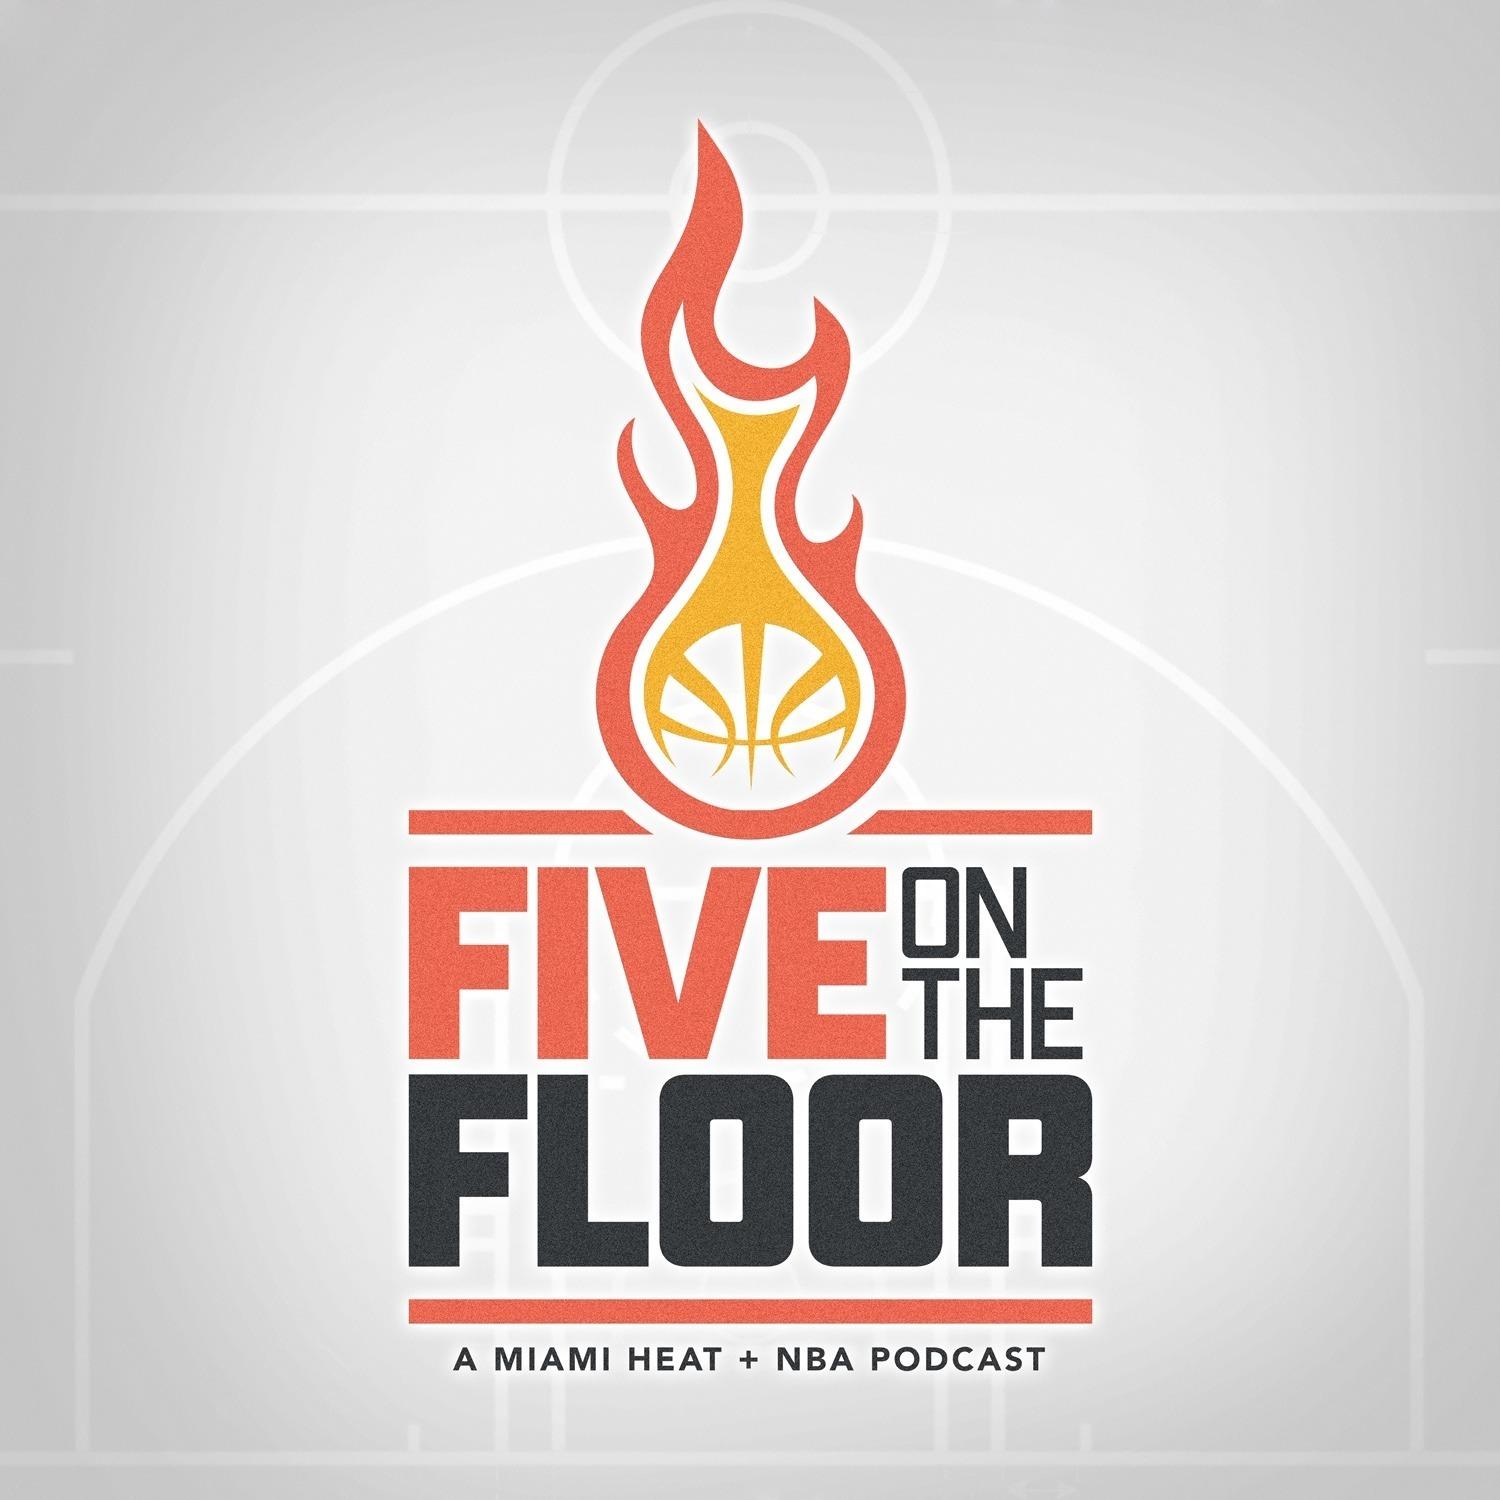 PREGAME POD  Knicks vs Suns Preview w/ Sam Cooper of the Timeline